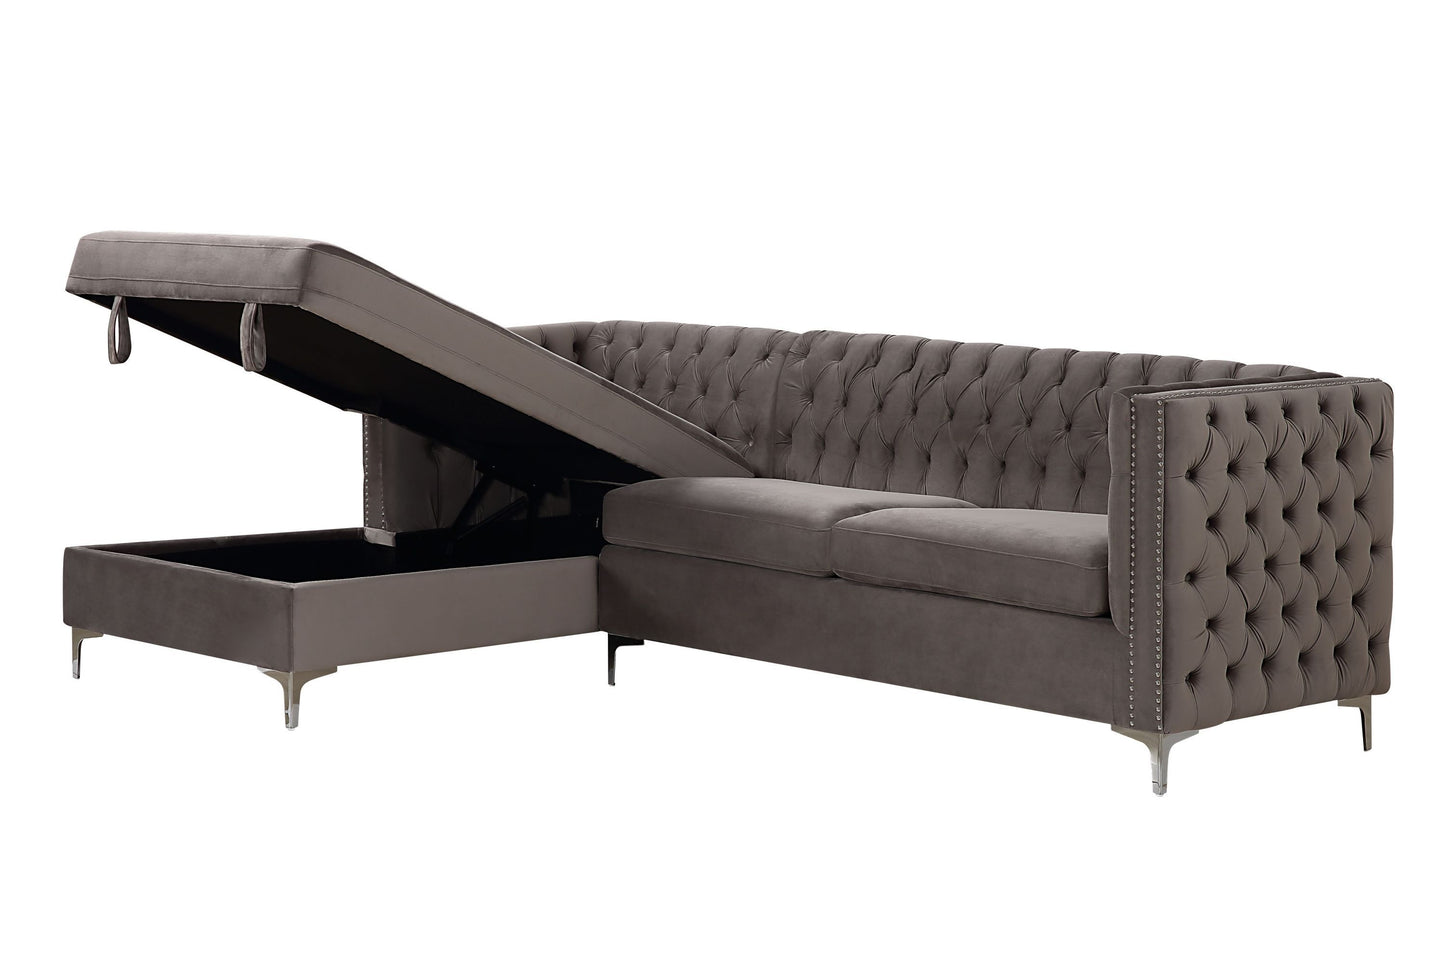 ACME Sullivan Sectional Sofa, Gray Velvet 55495 - Enova Luxe Home Store